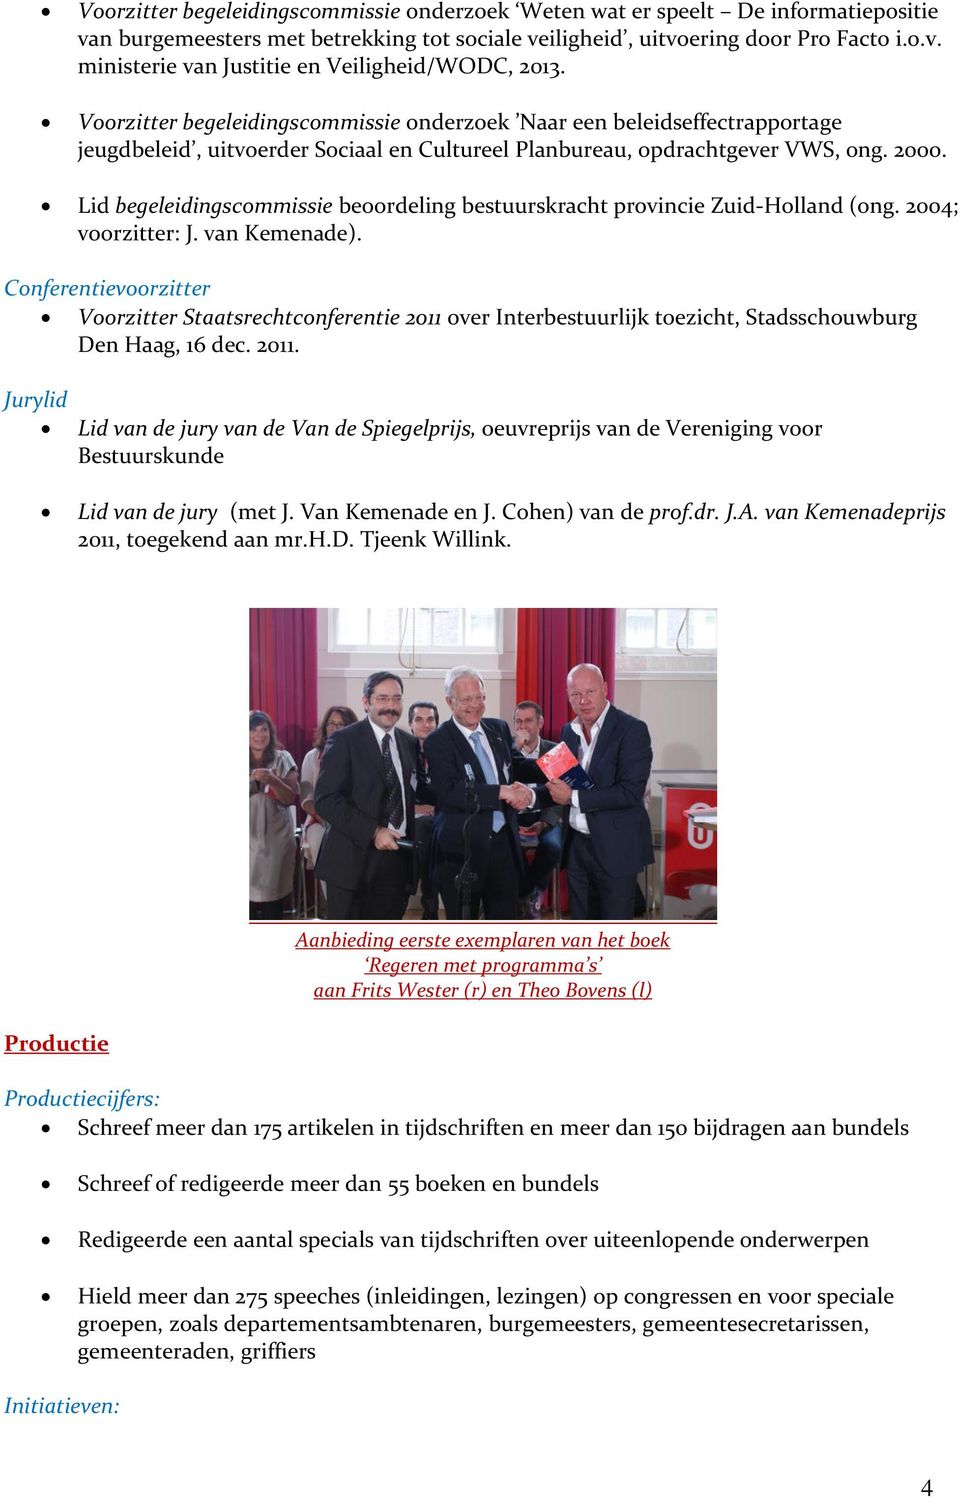 Lid begeleidingscommissie beoordeling bestuurskracht provincie Zuid-Holland (ong. 2004; voorzitter: J. van Kemenade).